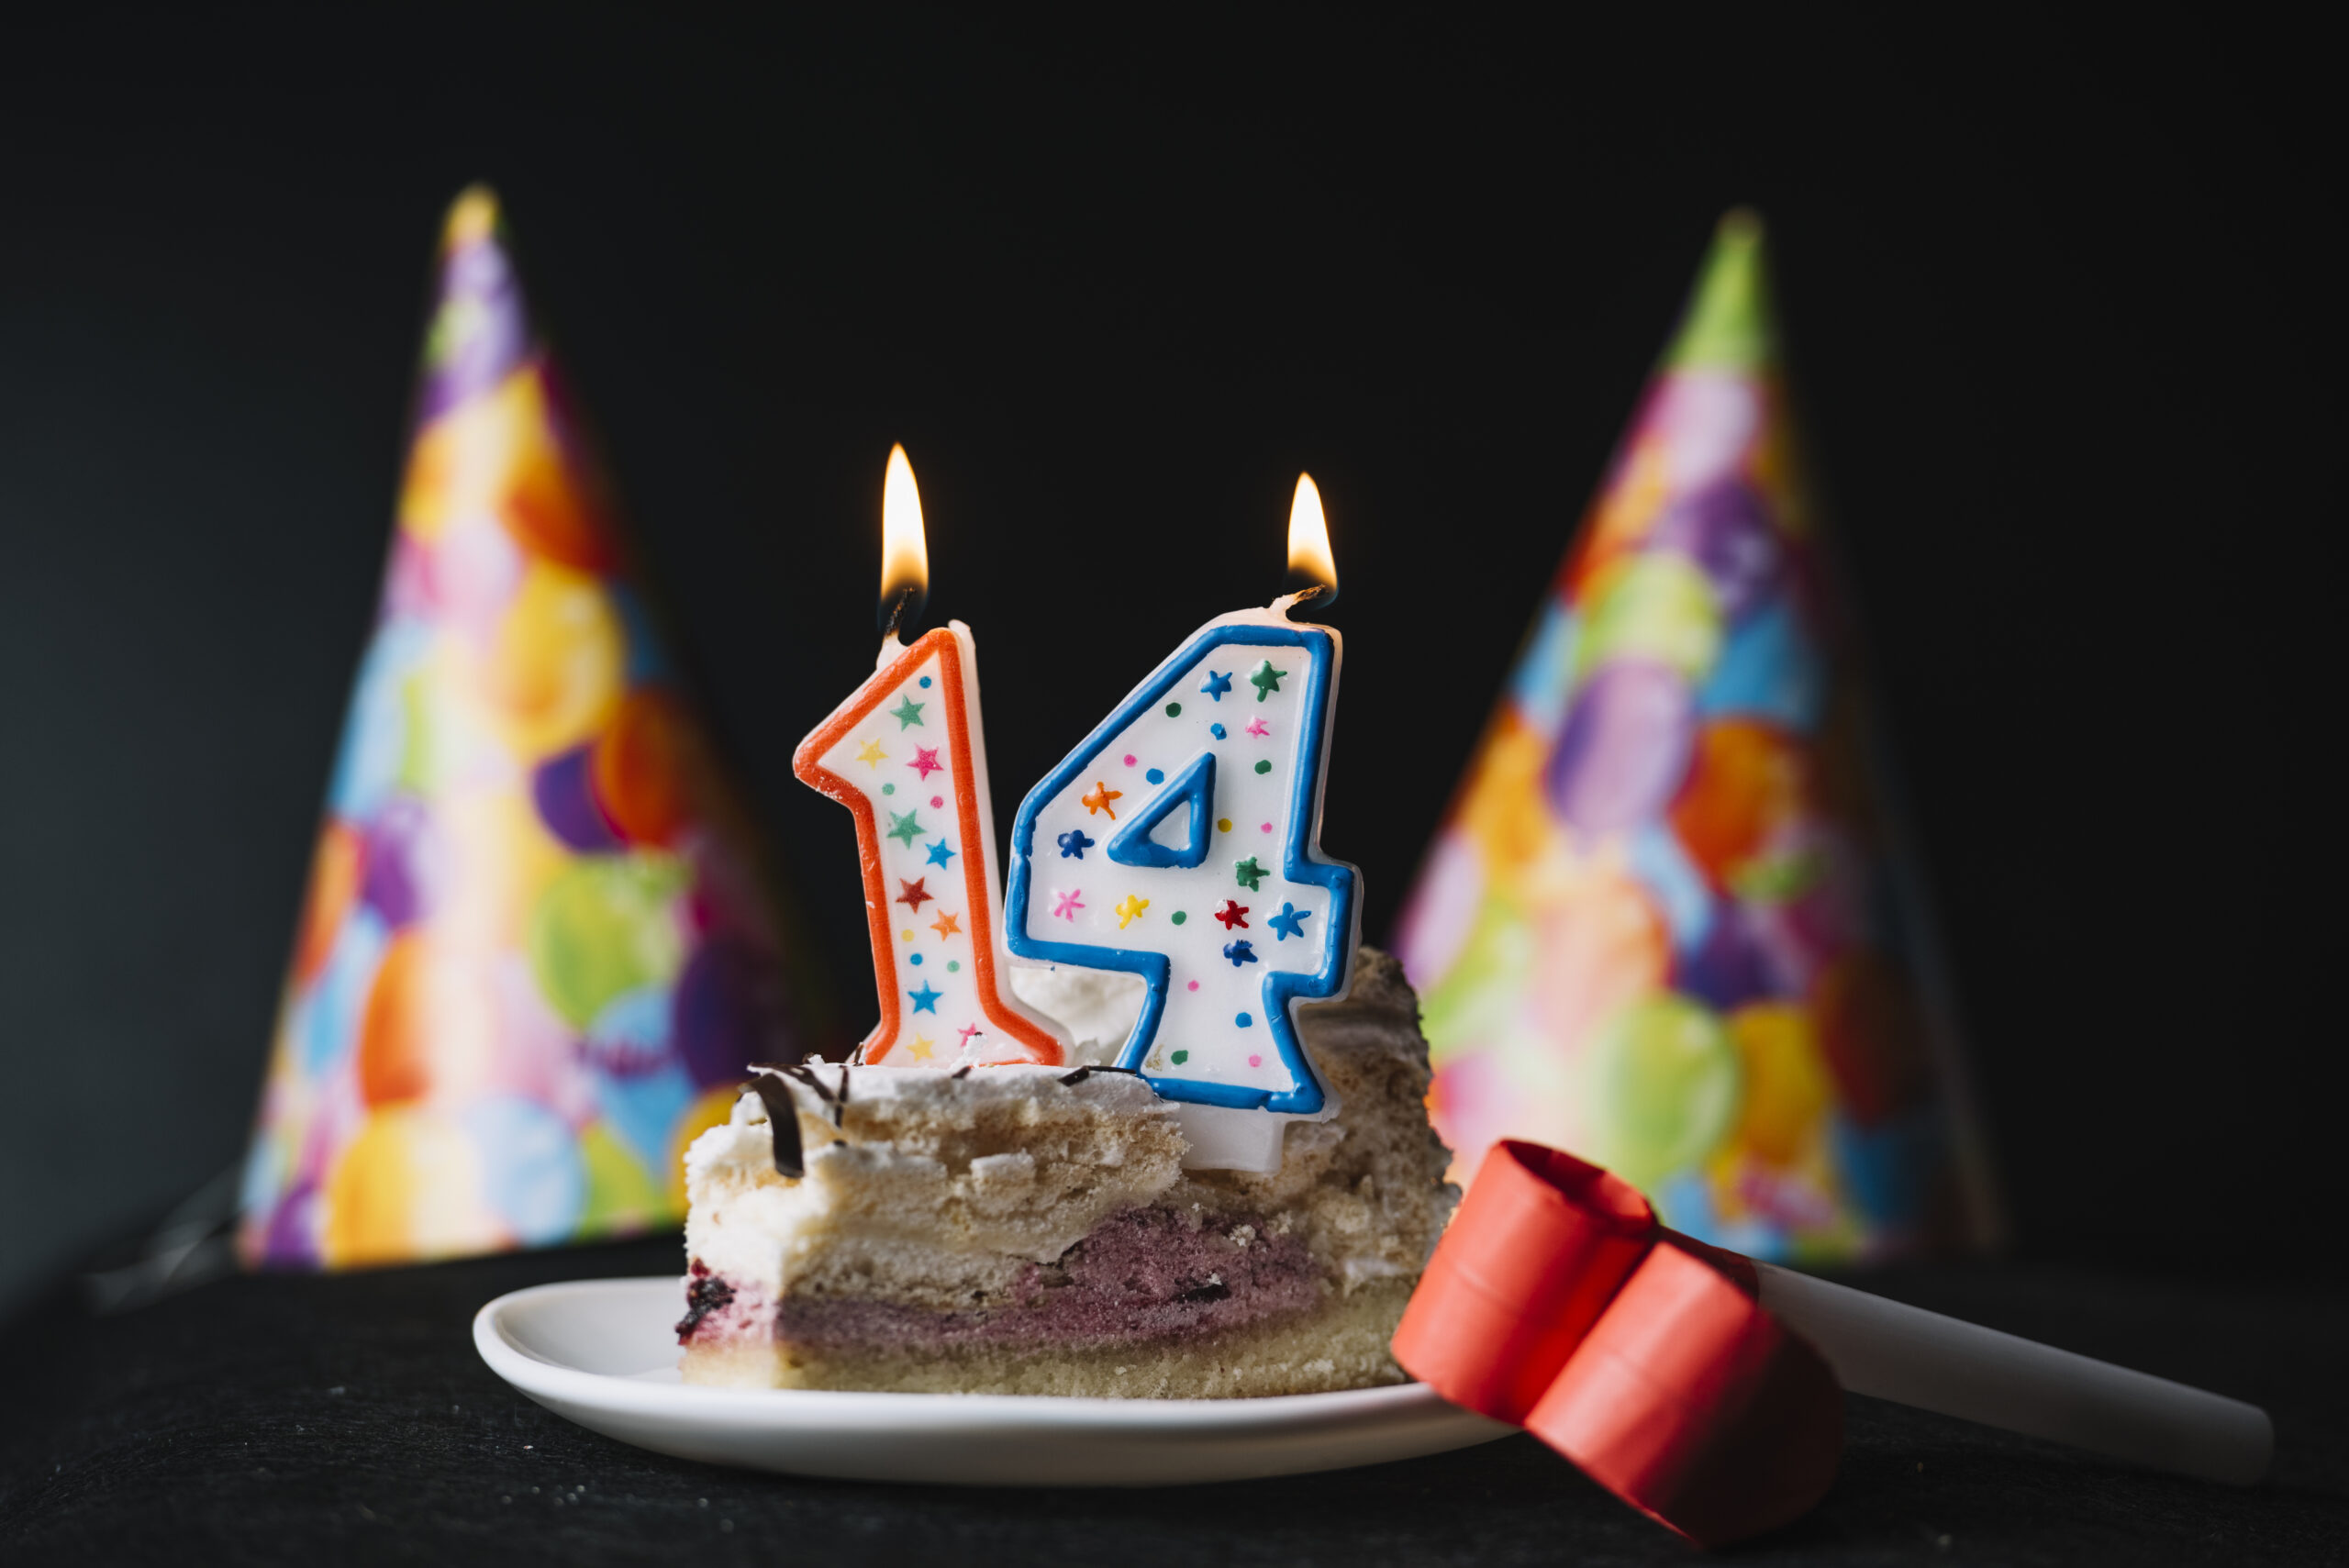 Birthday dates. 14 Лет с днем рождения свечи. Торт со свечами 35. Днём рождения 14 лет девочке свечи. Свечки 25.